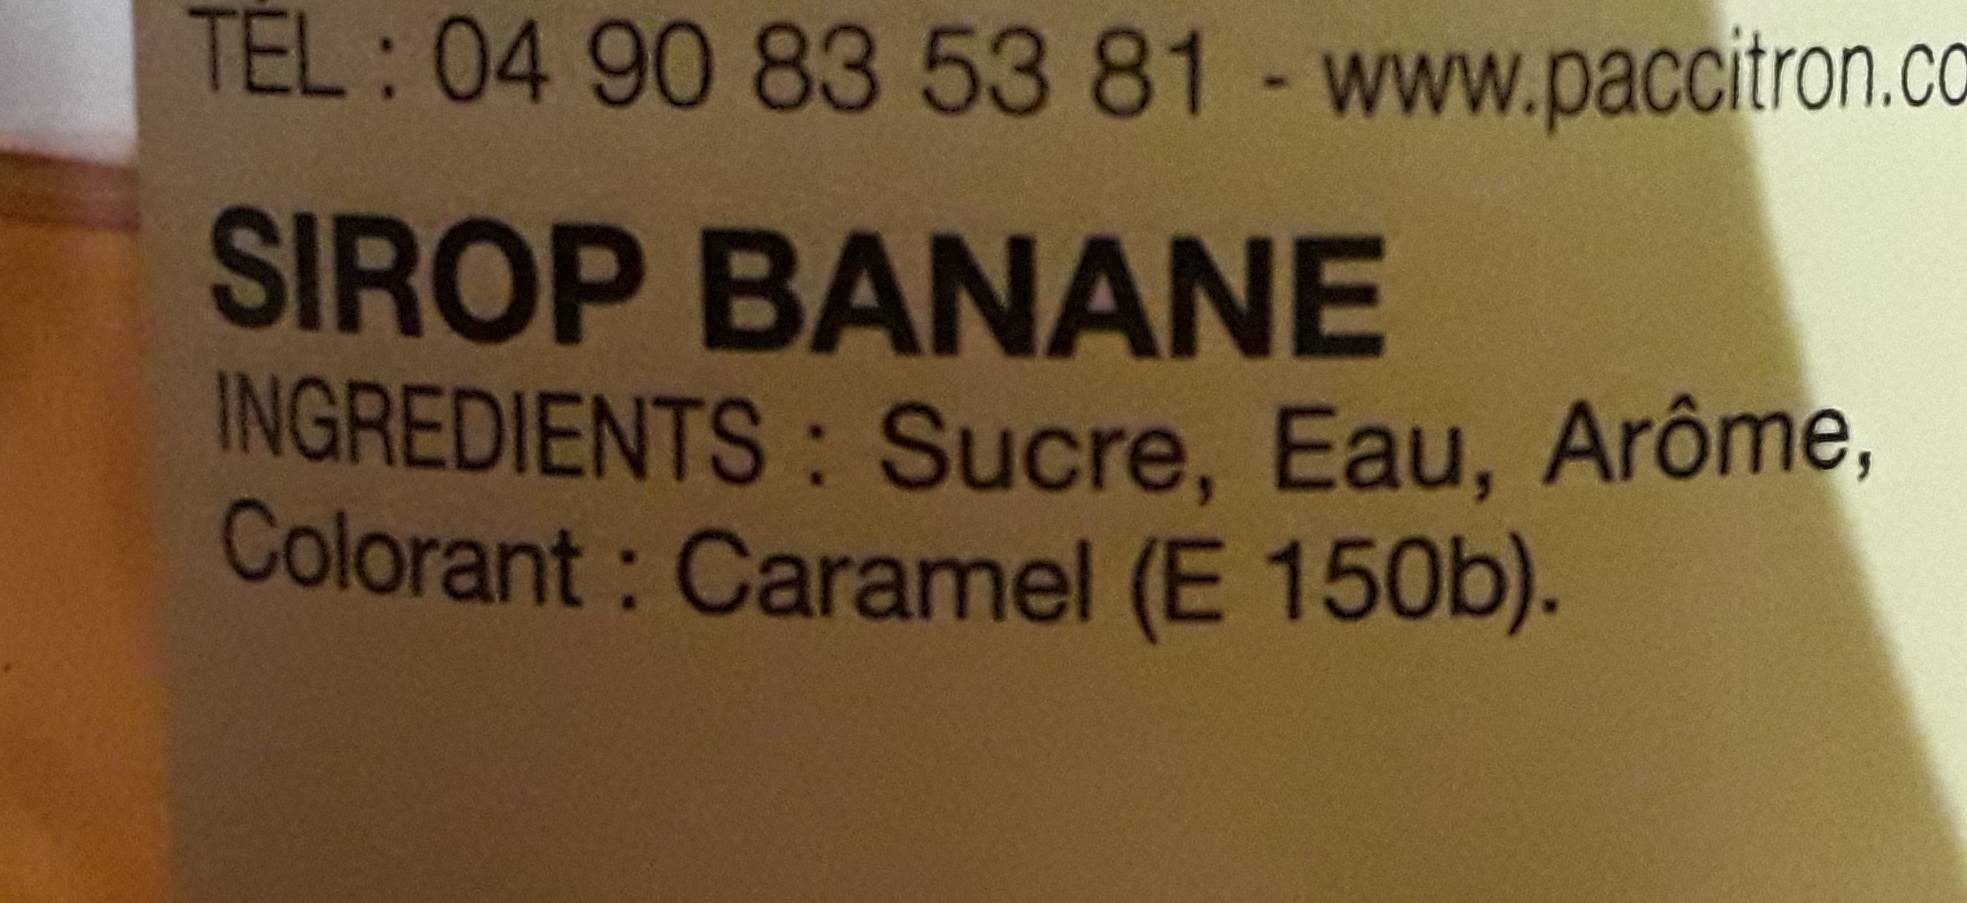 Sirop de banane - Ingredients - fr